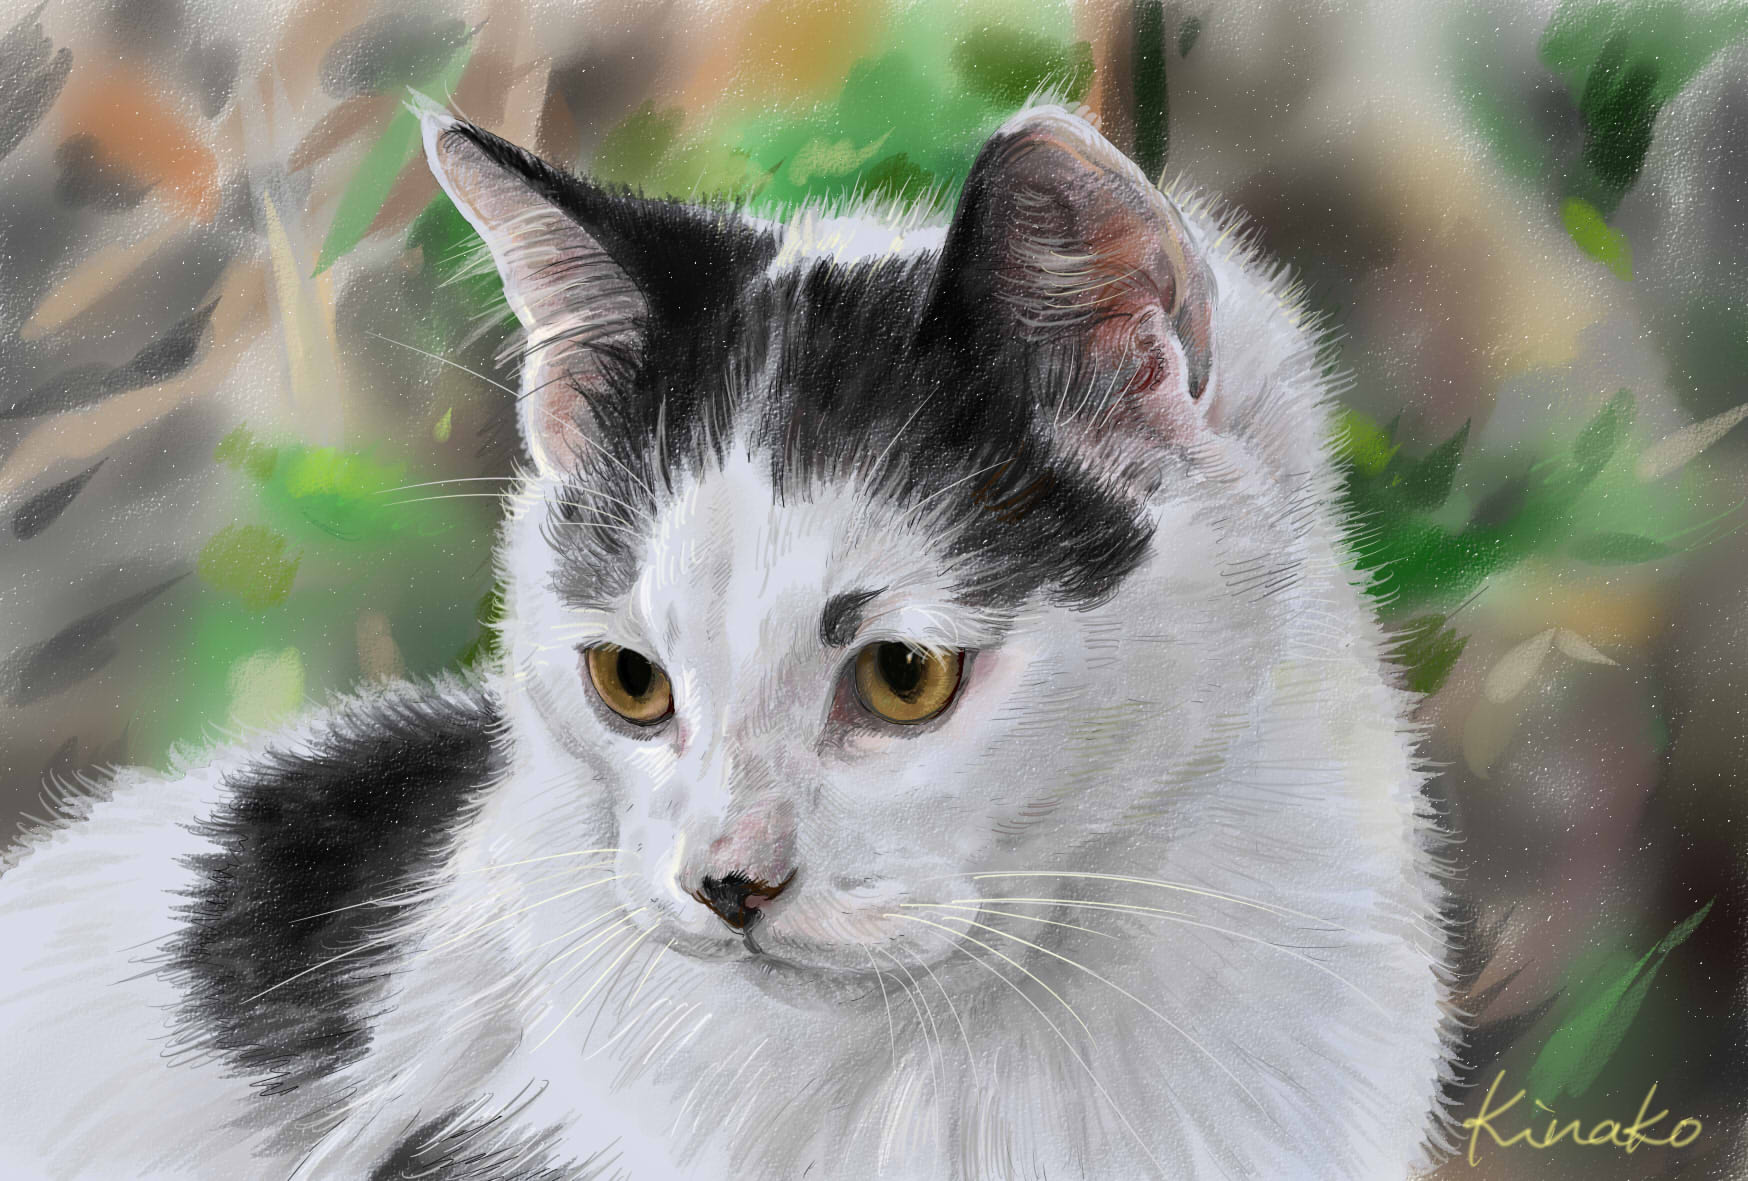 きなこ 猫の絵を描いています 昨年の作品です 猫ってきれいですね 猫絵 Cat Drawing 猫イラスト 猫画 T Co Azhhtxhsxg Twitter